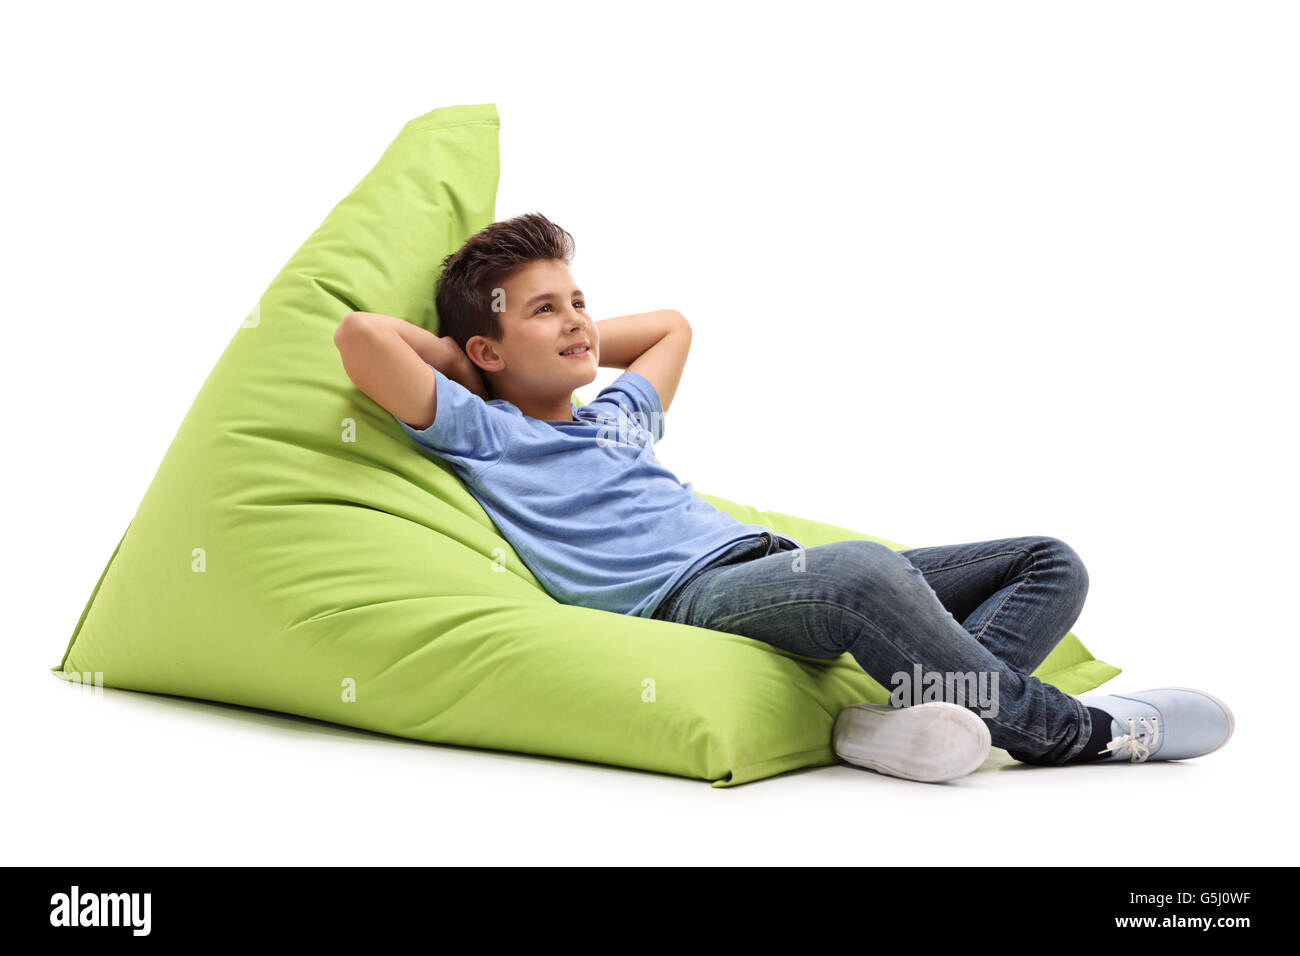 Entspannte junge Verlegung auf eine angenehm grüne Sitzsack isoliert auf weißem Hintergrund Stockfoto